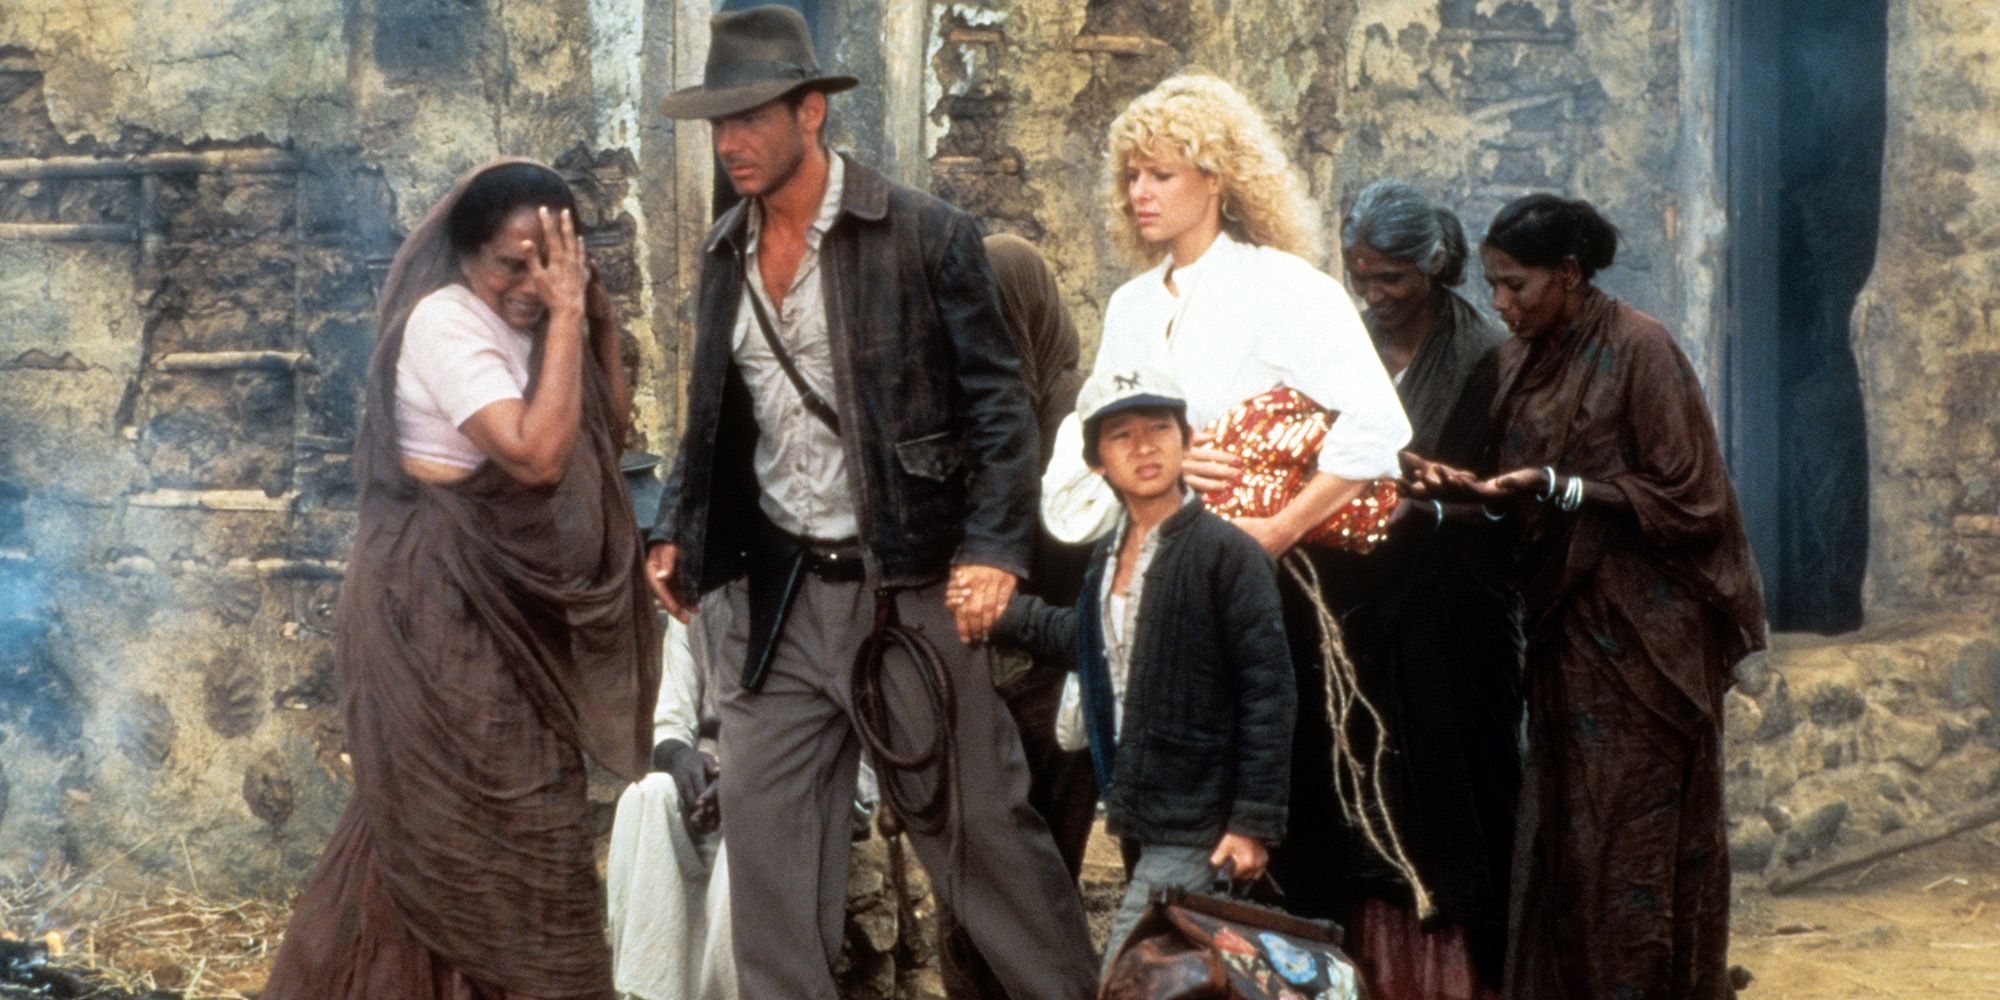 Indiana Jones Temple of Doom cast shot